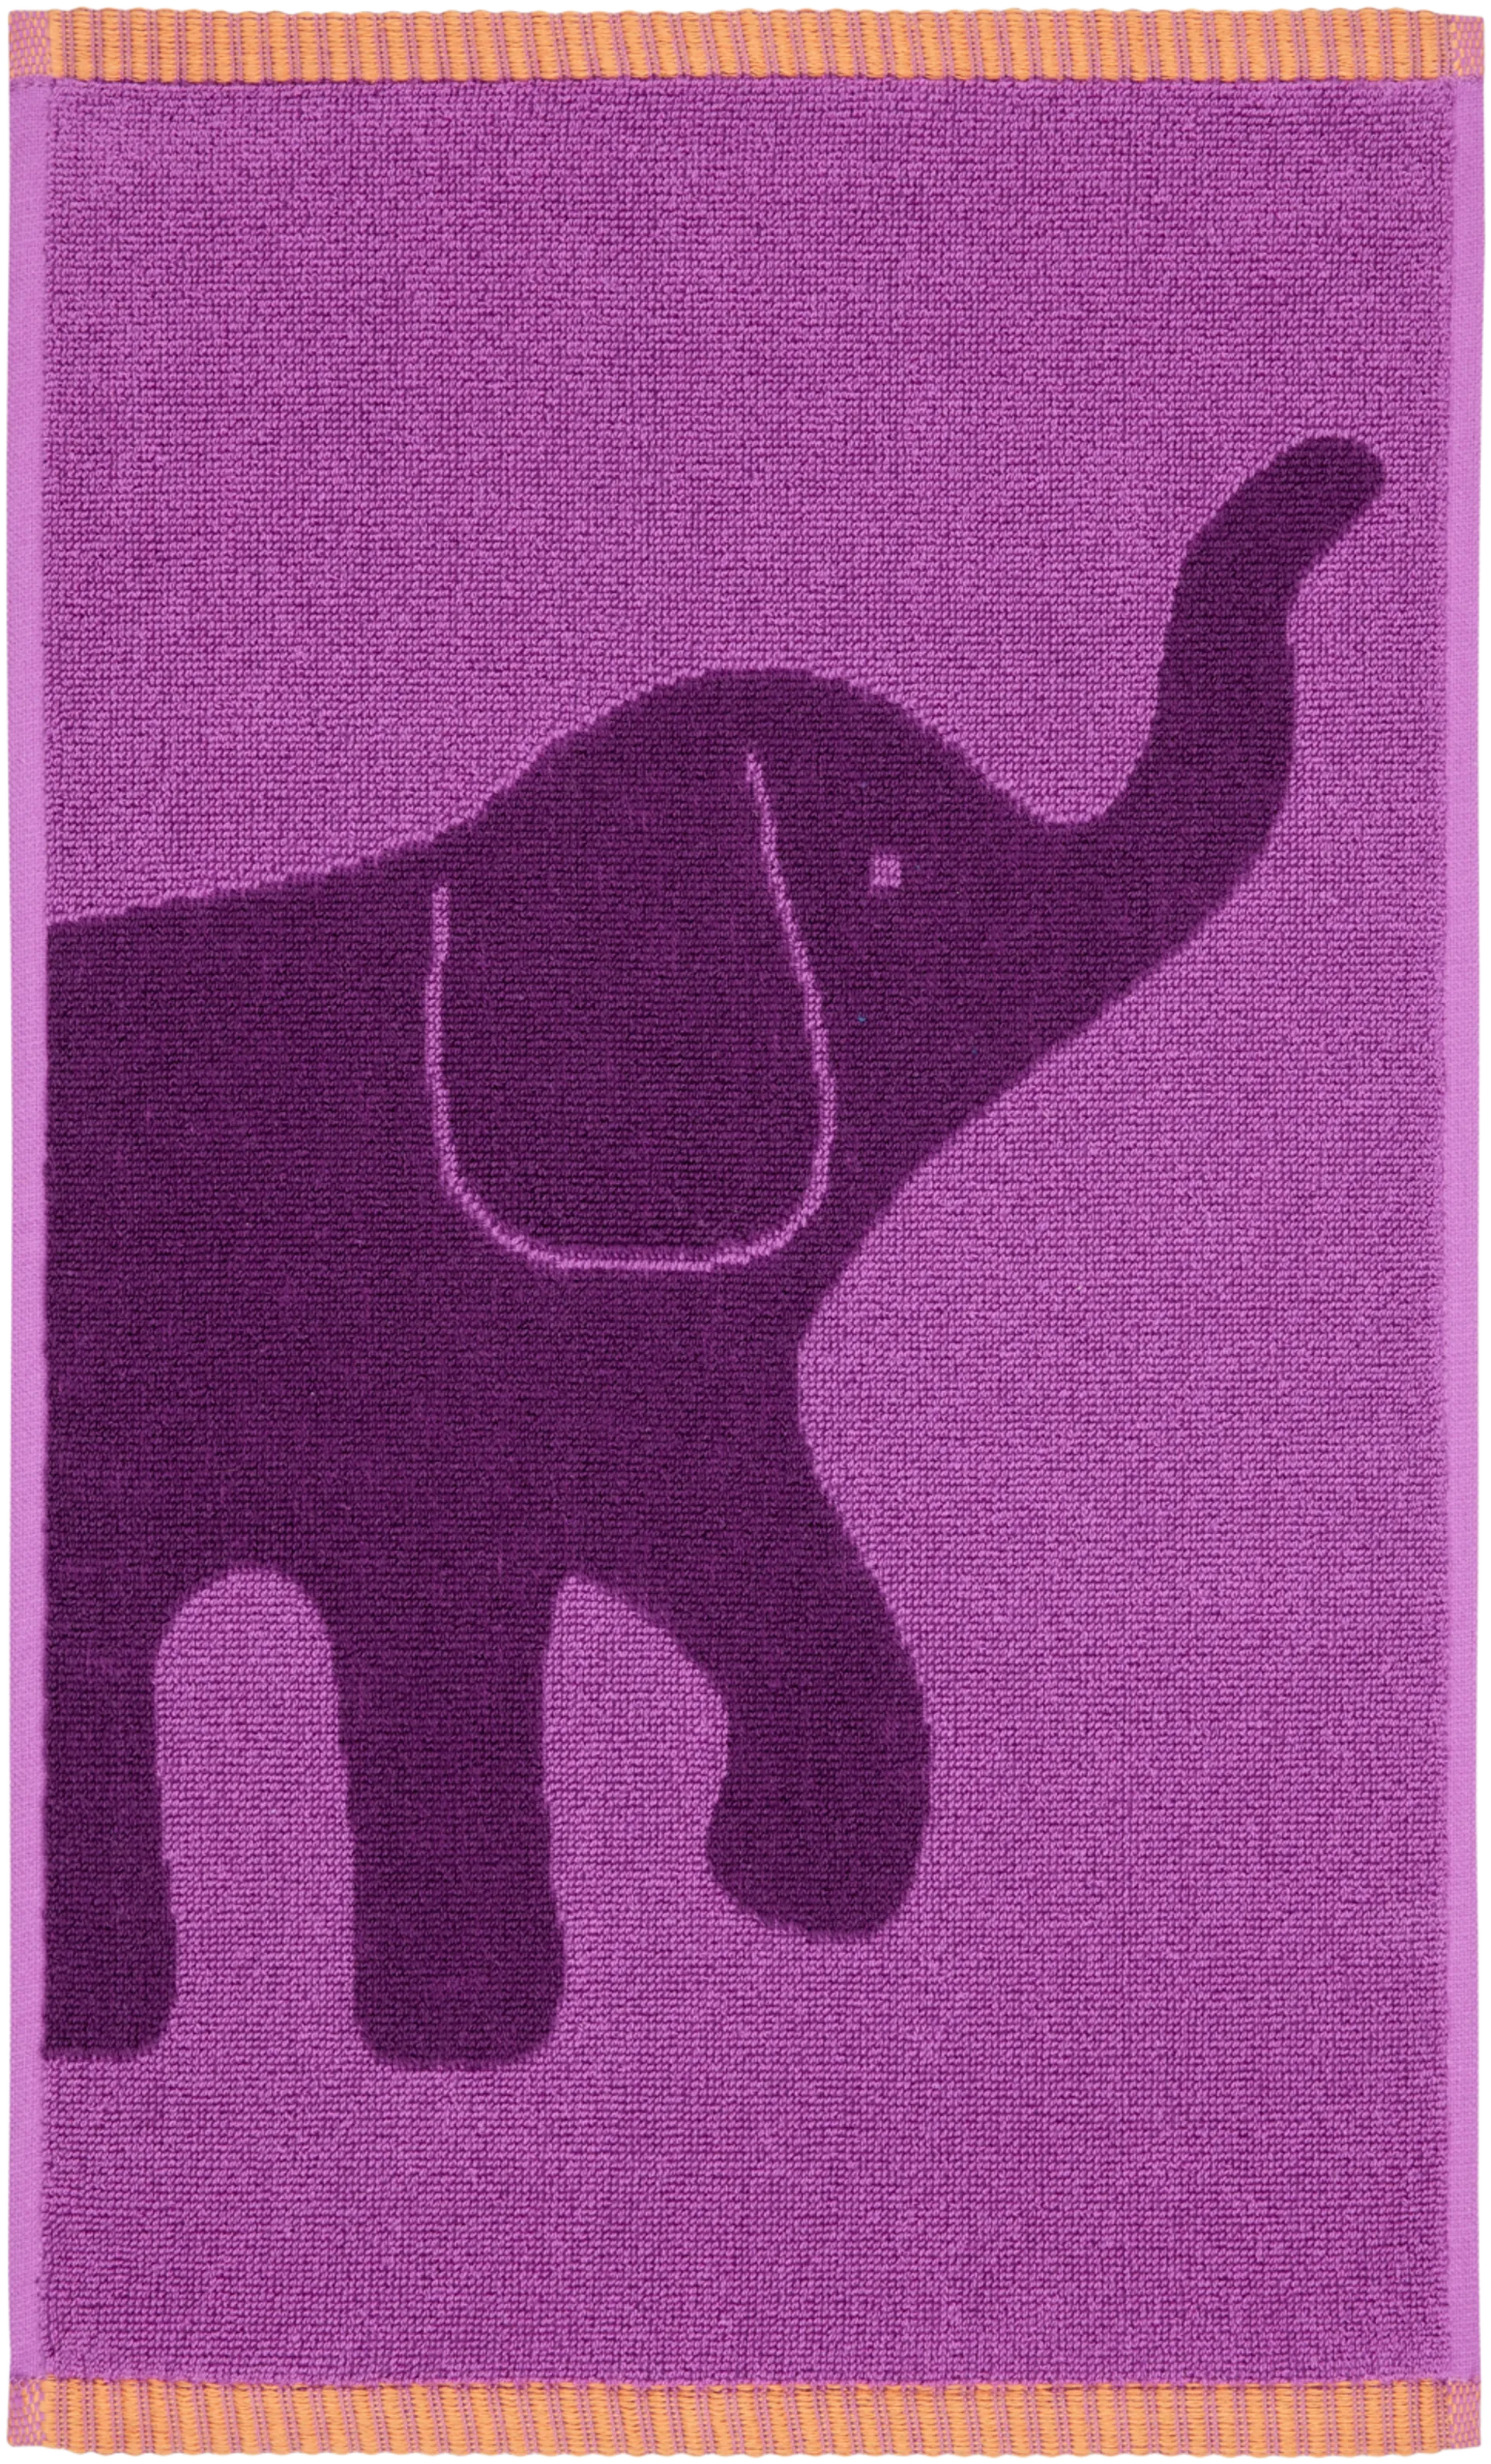 Finlayson Käsipyyhe Elefantti Vapaa 30x50cm violetti/oranssi - 1